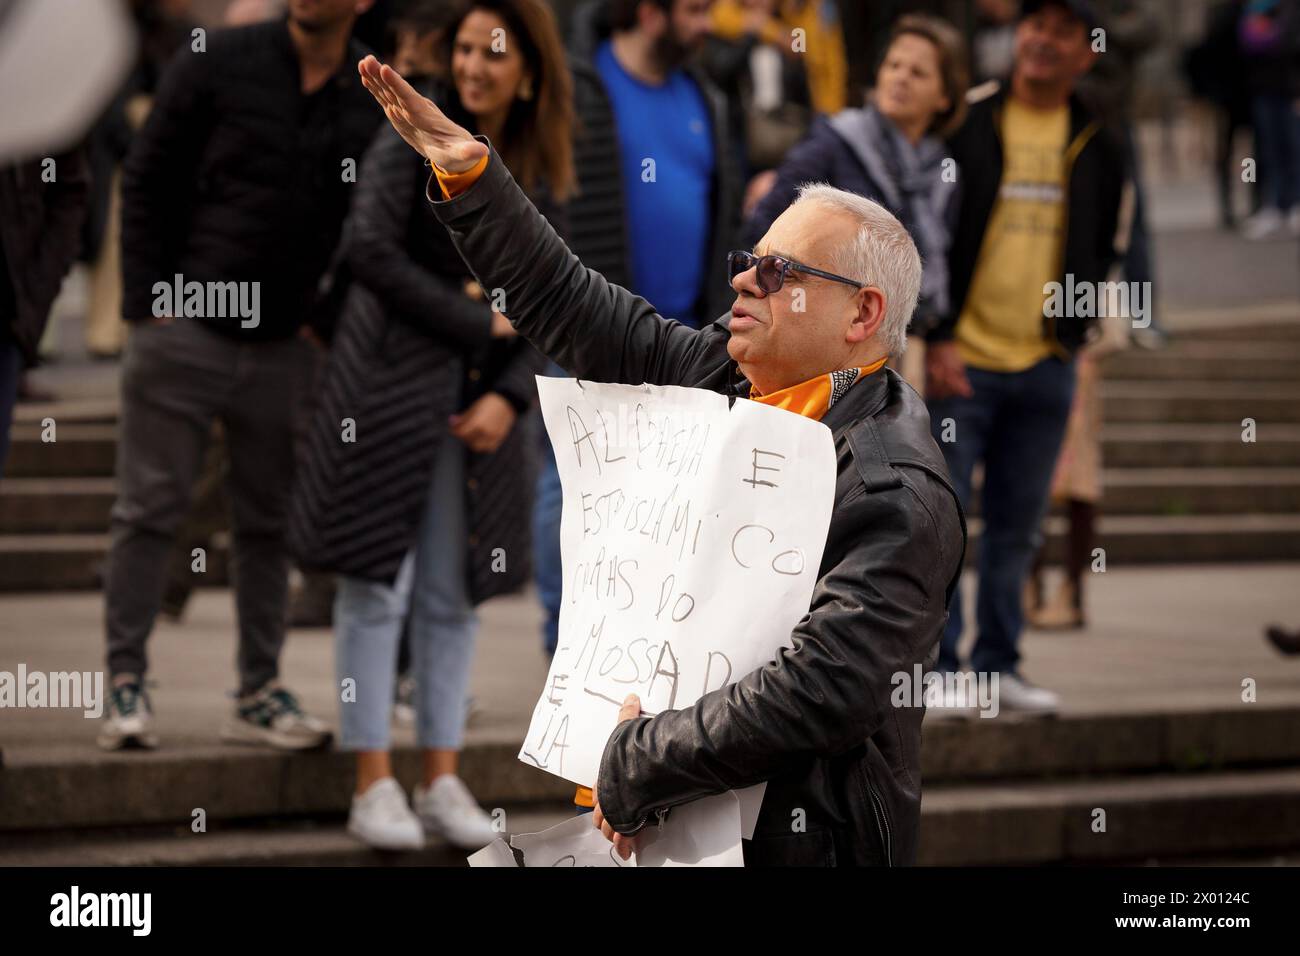 Porto, Portogallo. 6 aprile 2024. (NOTA PER I REDATTORI: L'immagine contiene profanità) un manifestante anti-immigrazione tiene un cartello durante la dimostrazione. Proteste antifasciste e anti-immigrazione hanno avuto luogo a Porto, all'incirca nello stesso momento e luogo. (Credit Image: © David Oliveira/SOPA Images via ZUMA Press Wire) SOLO PER USO EDITORIALE! Non per USO commerciale! Foto Stock